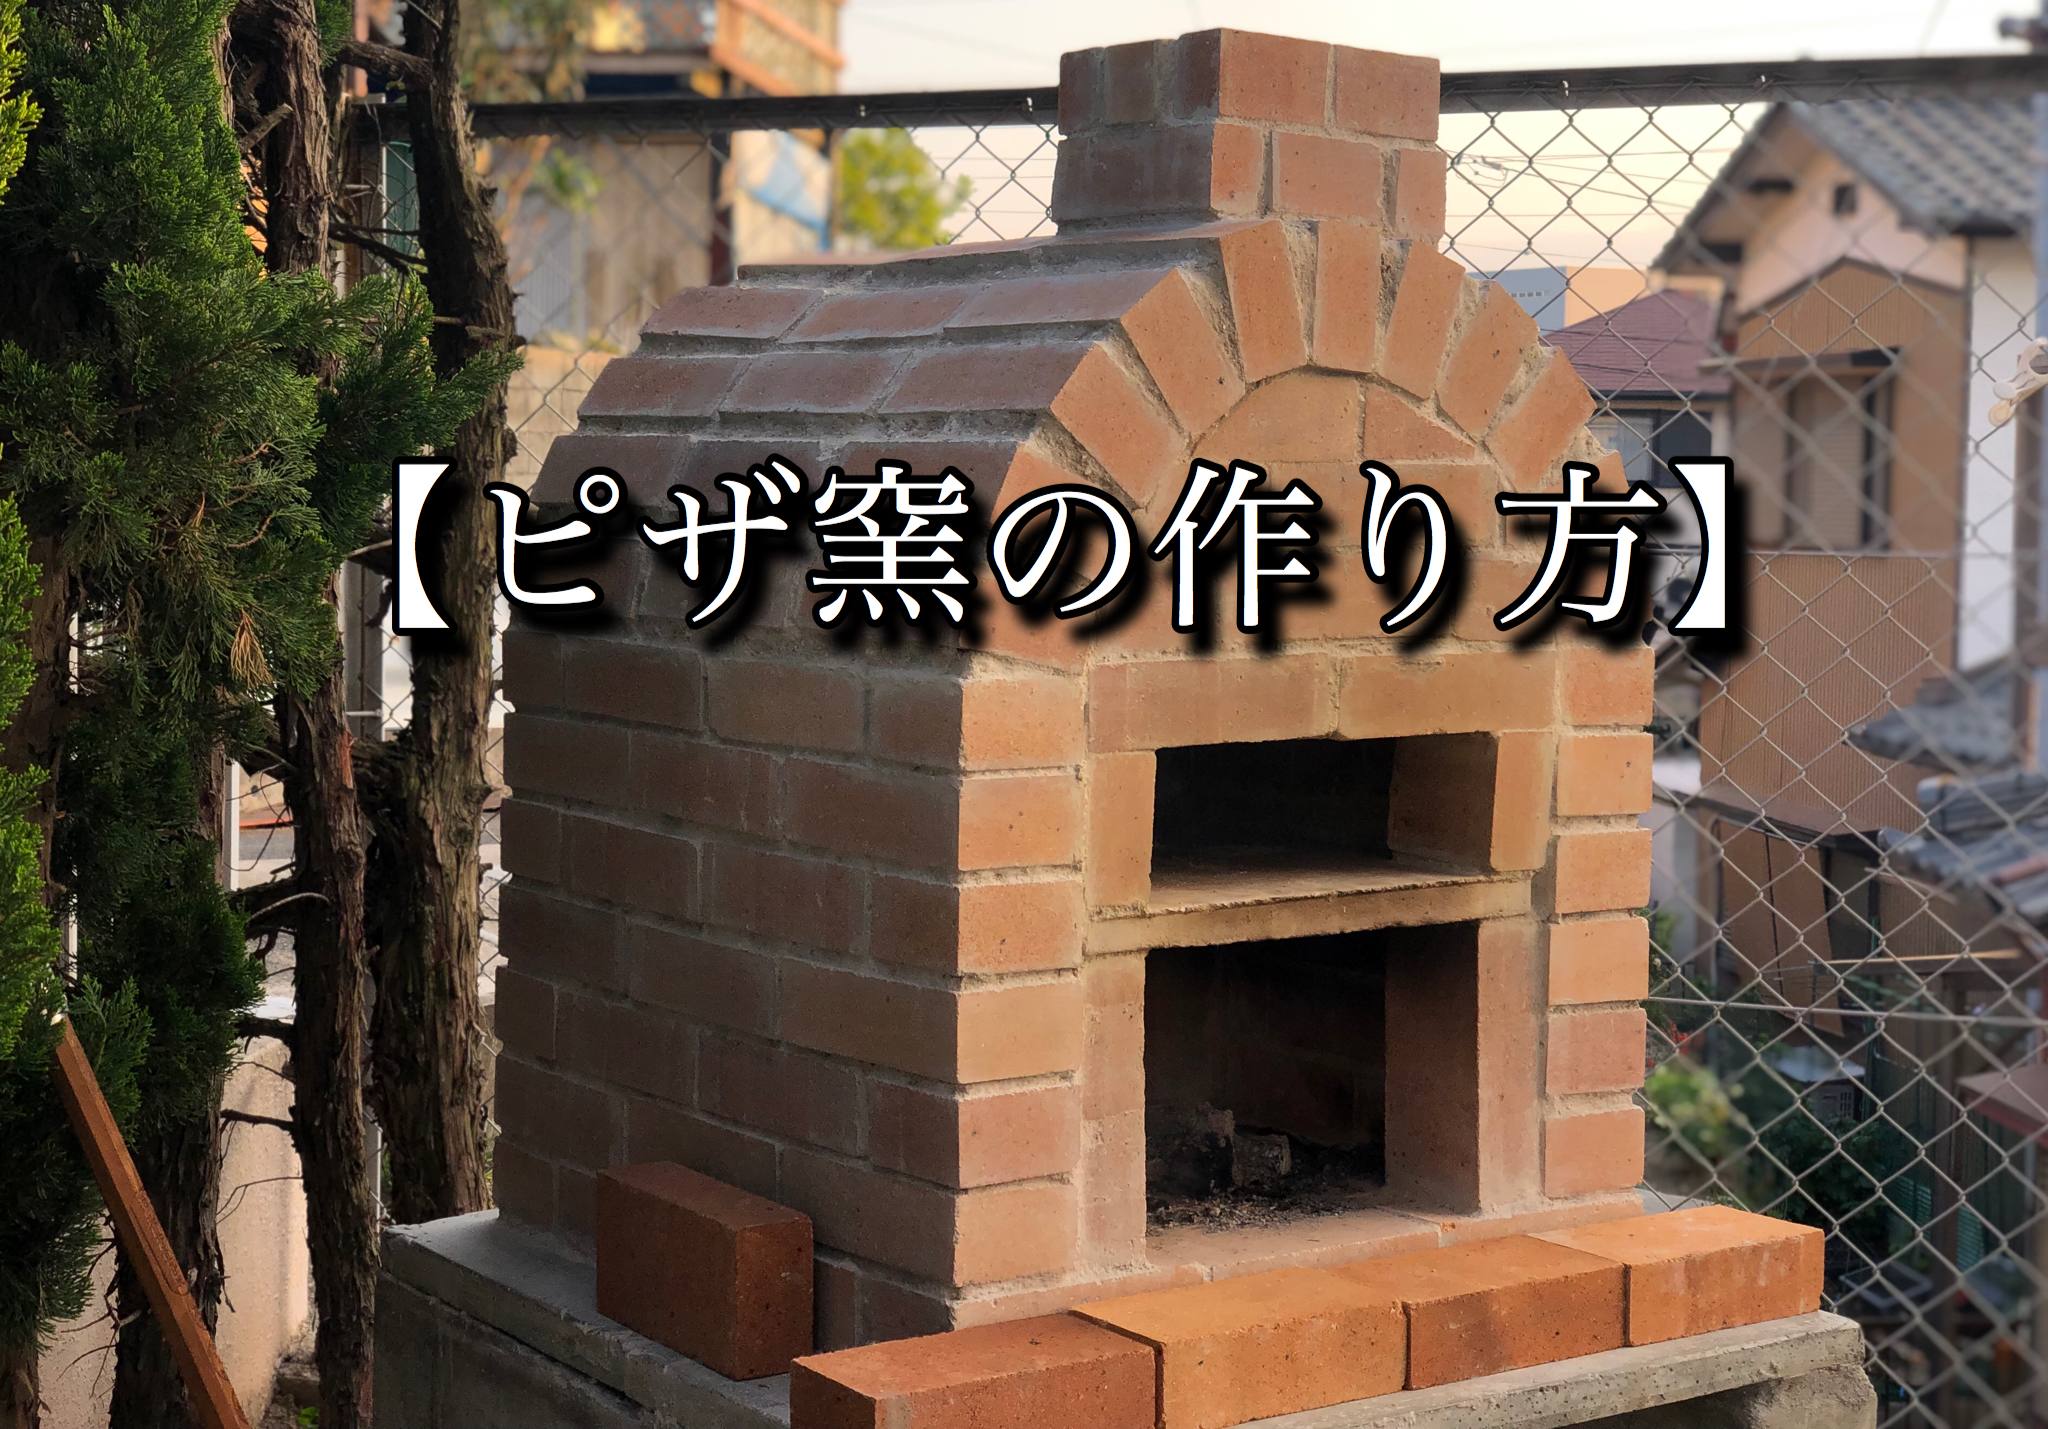 国内正規品 【残りわずか!】一層式 ピザ窯 キット 耐火煉瓦